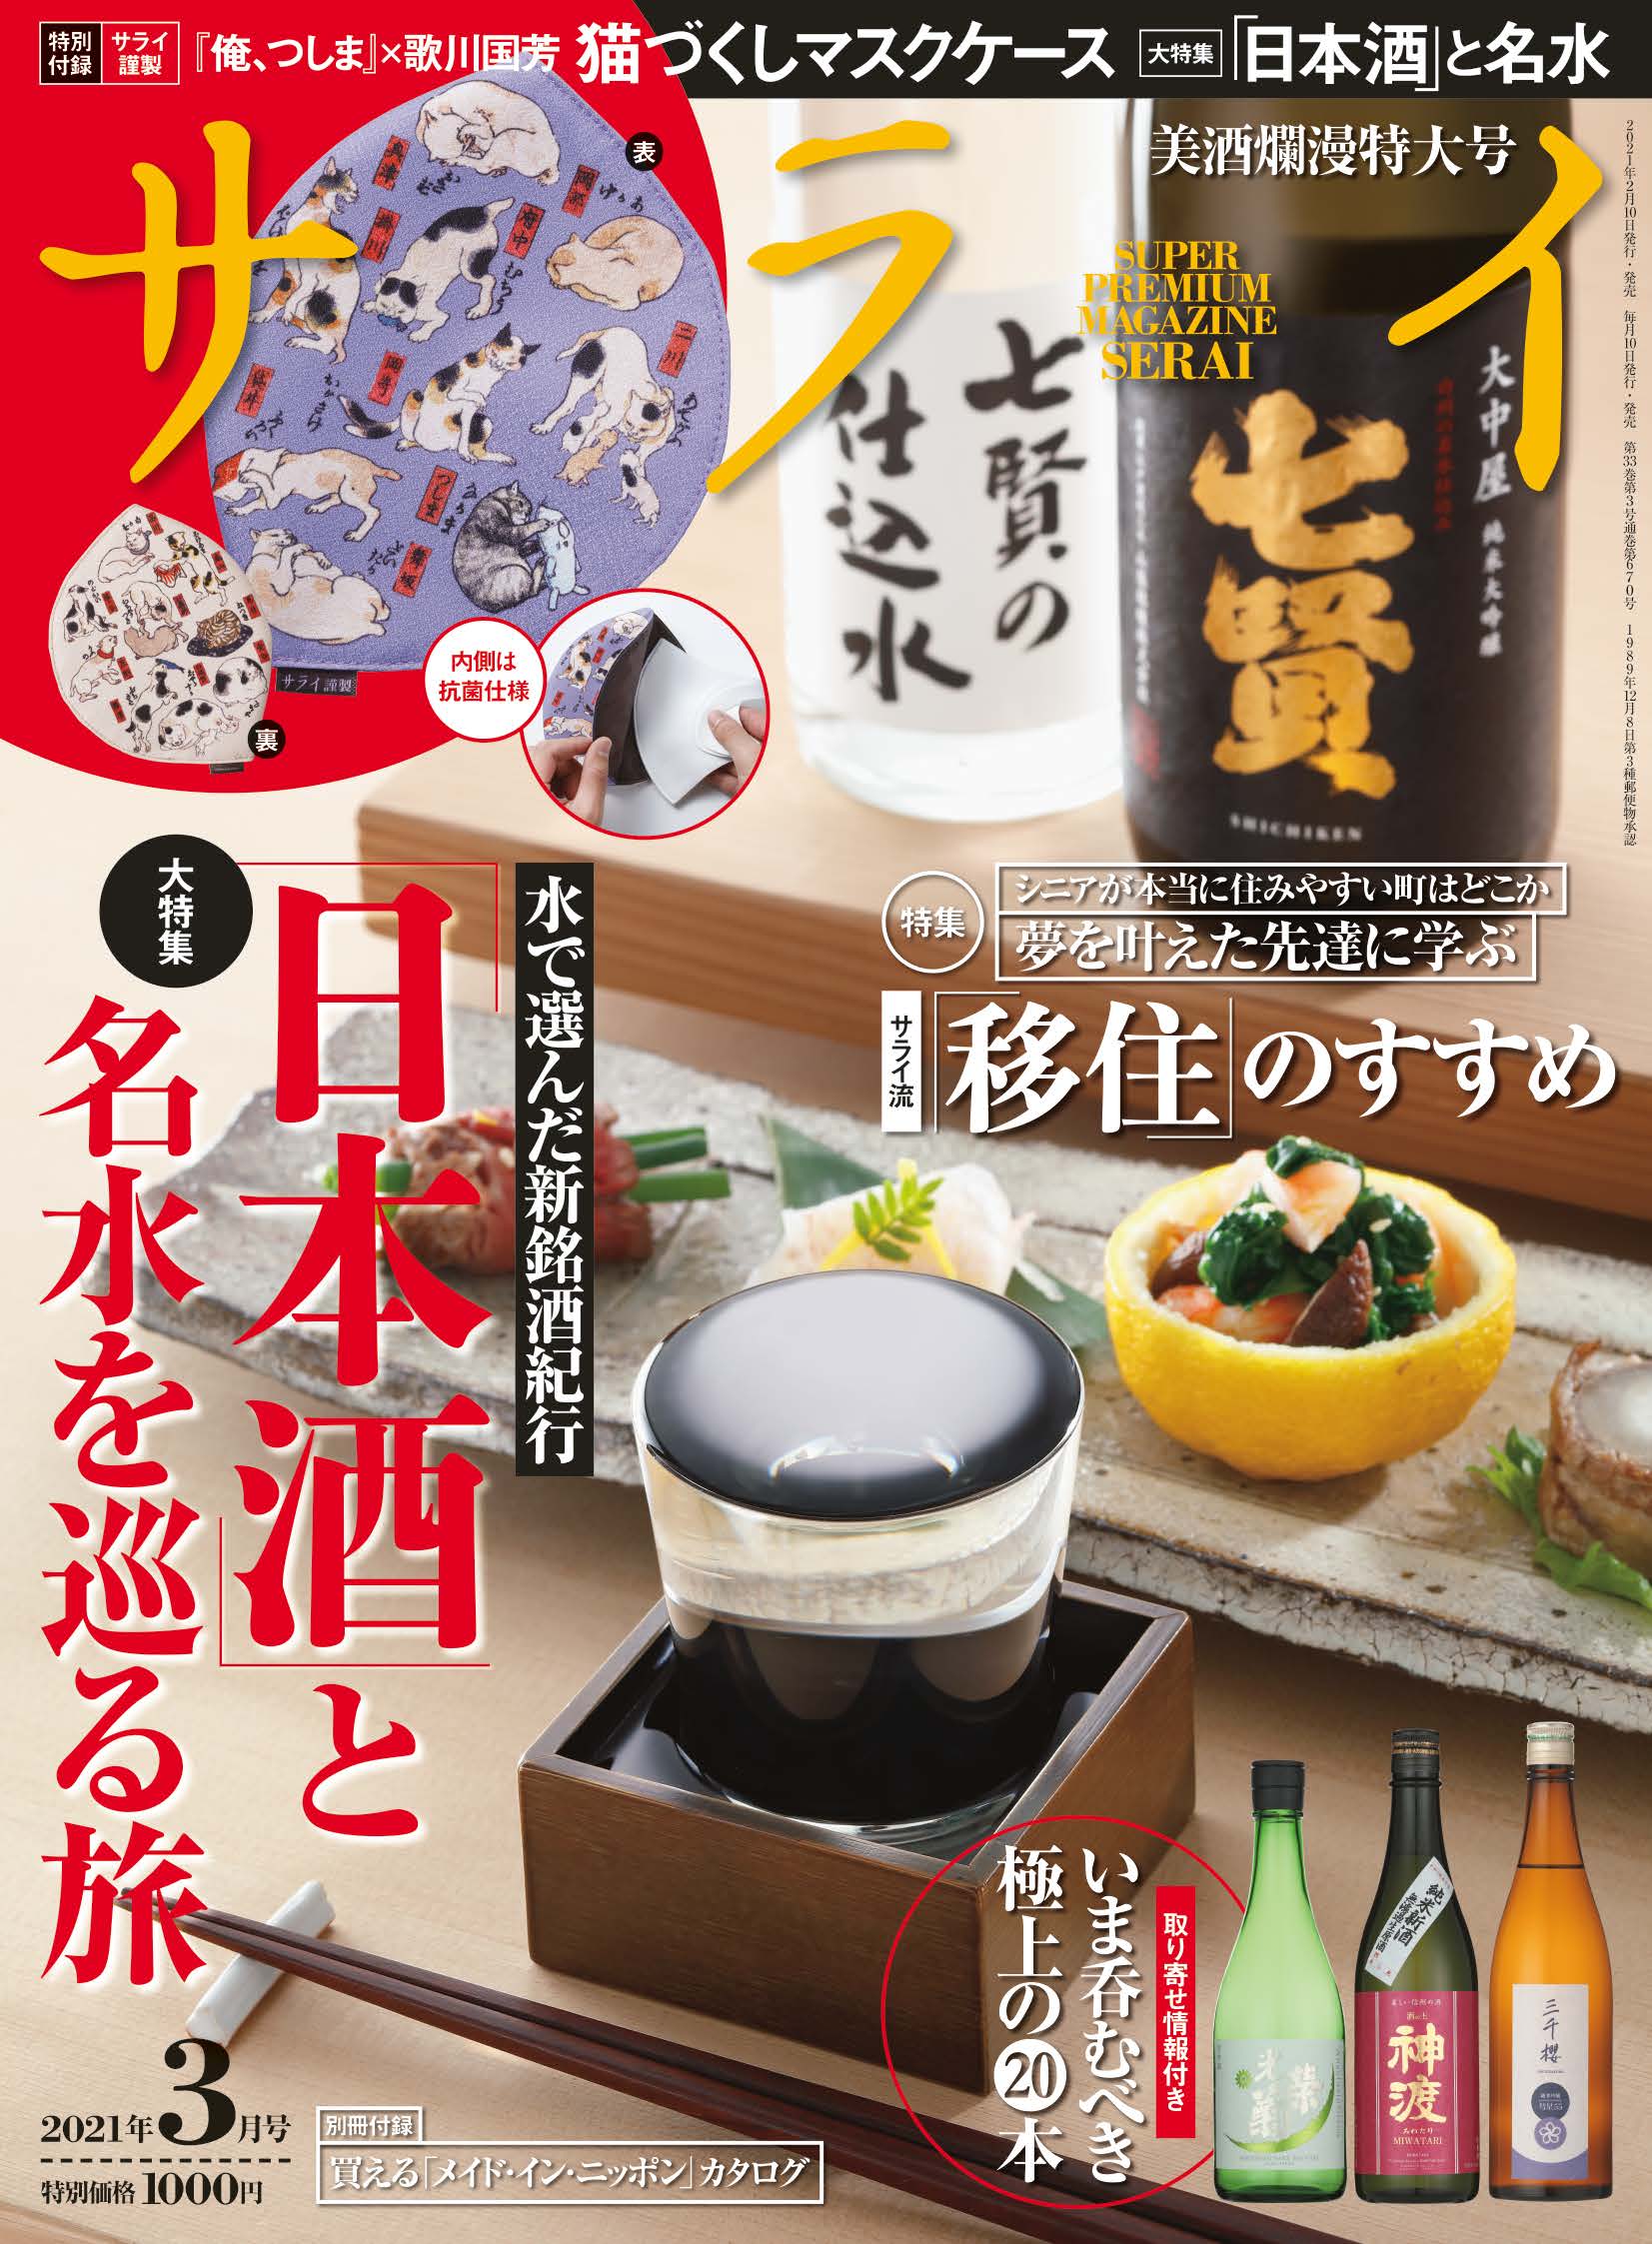 サライ 最新号 本日発売 大特集は 日本酒 と名水を巡る旅 特別付録は抗菌防臭加工 猫づくしマスクケース 株式会社小学館のプレスリリース